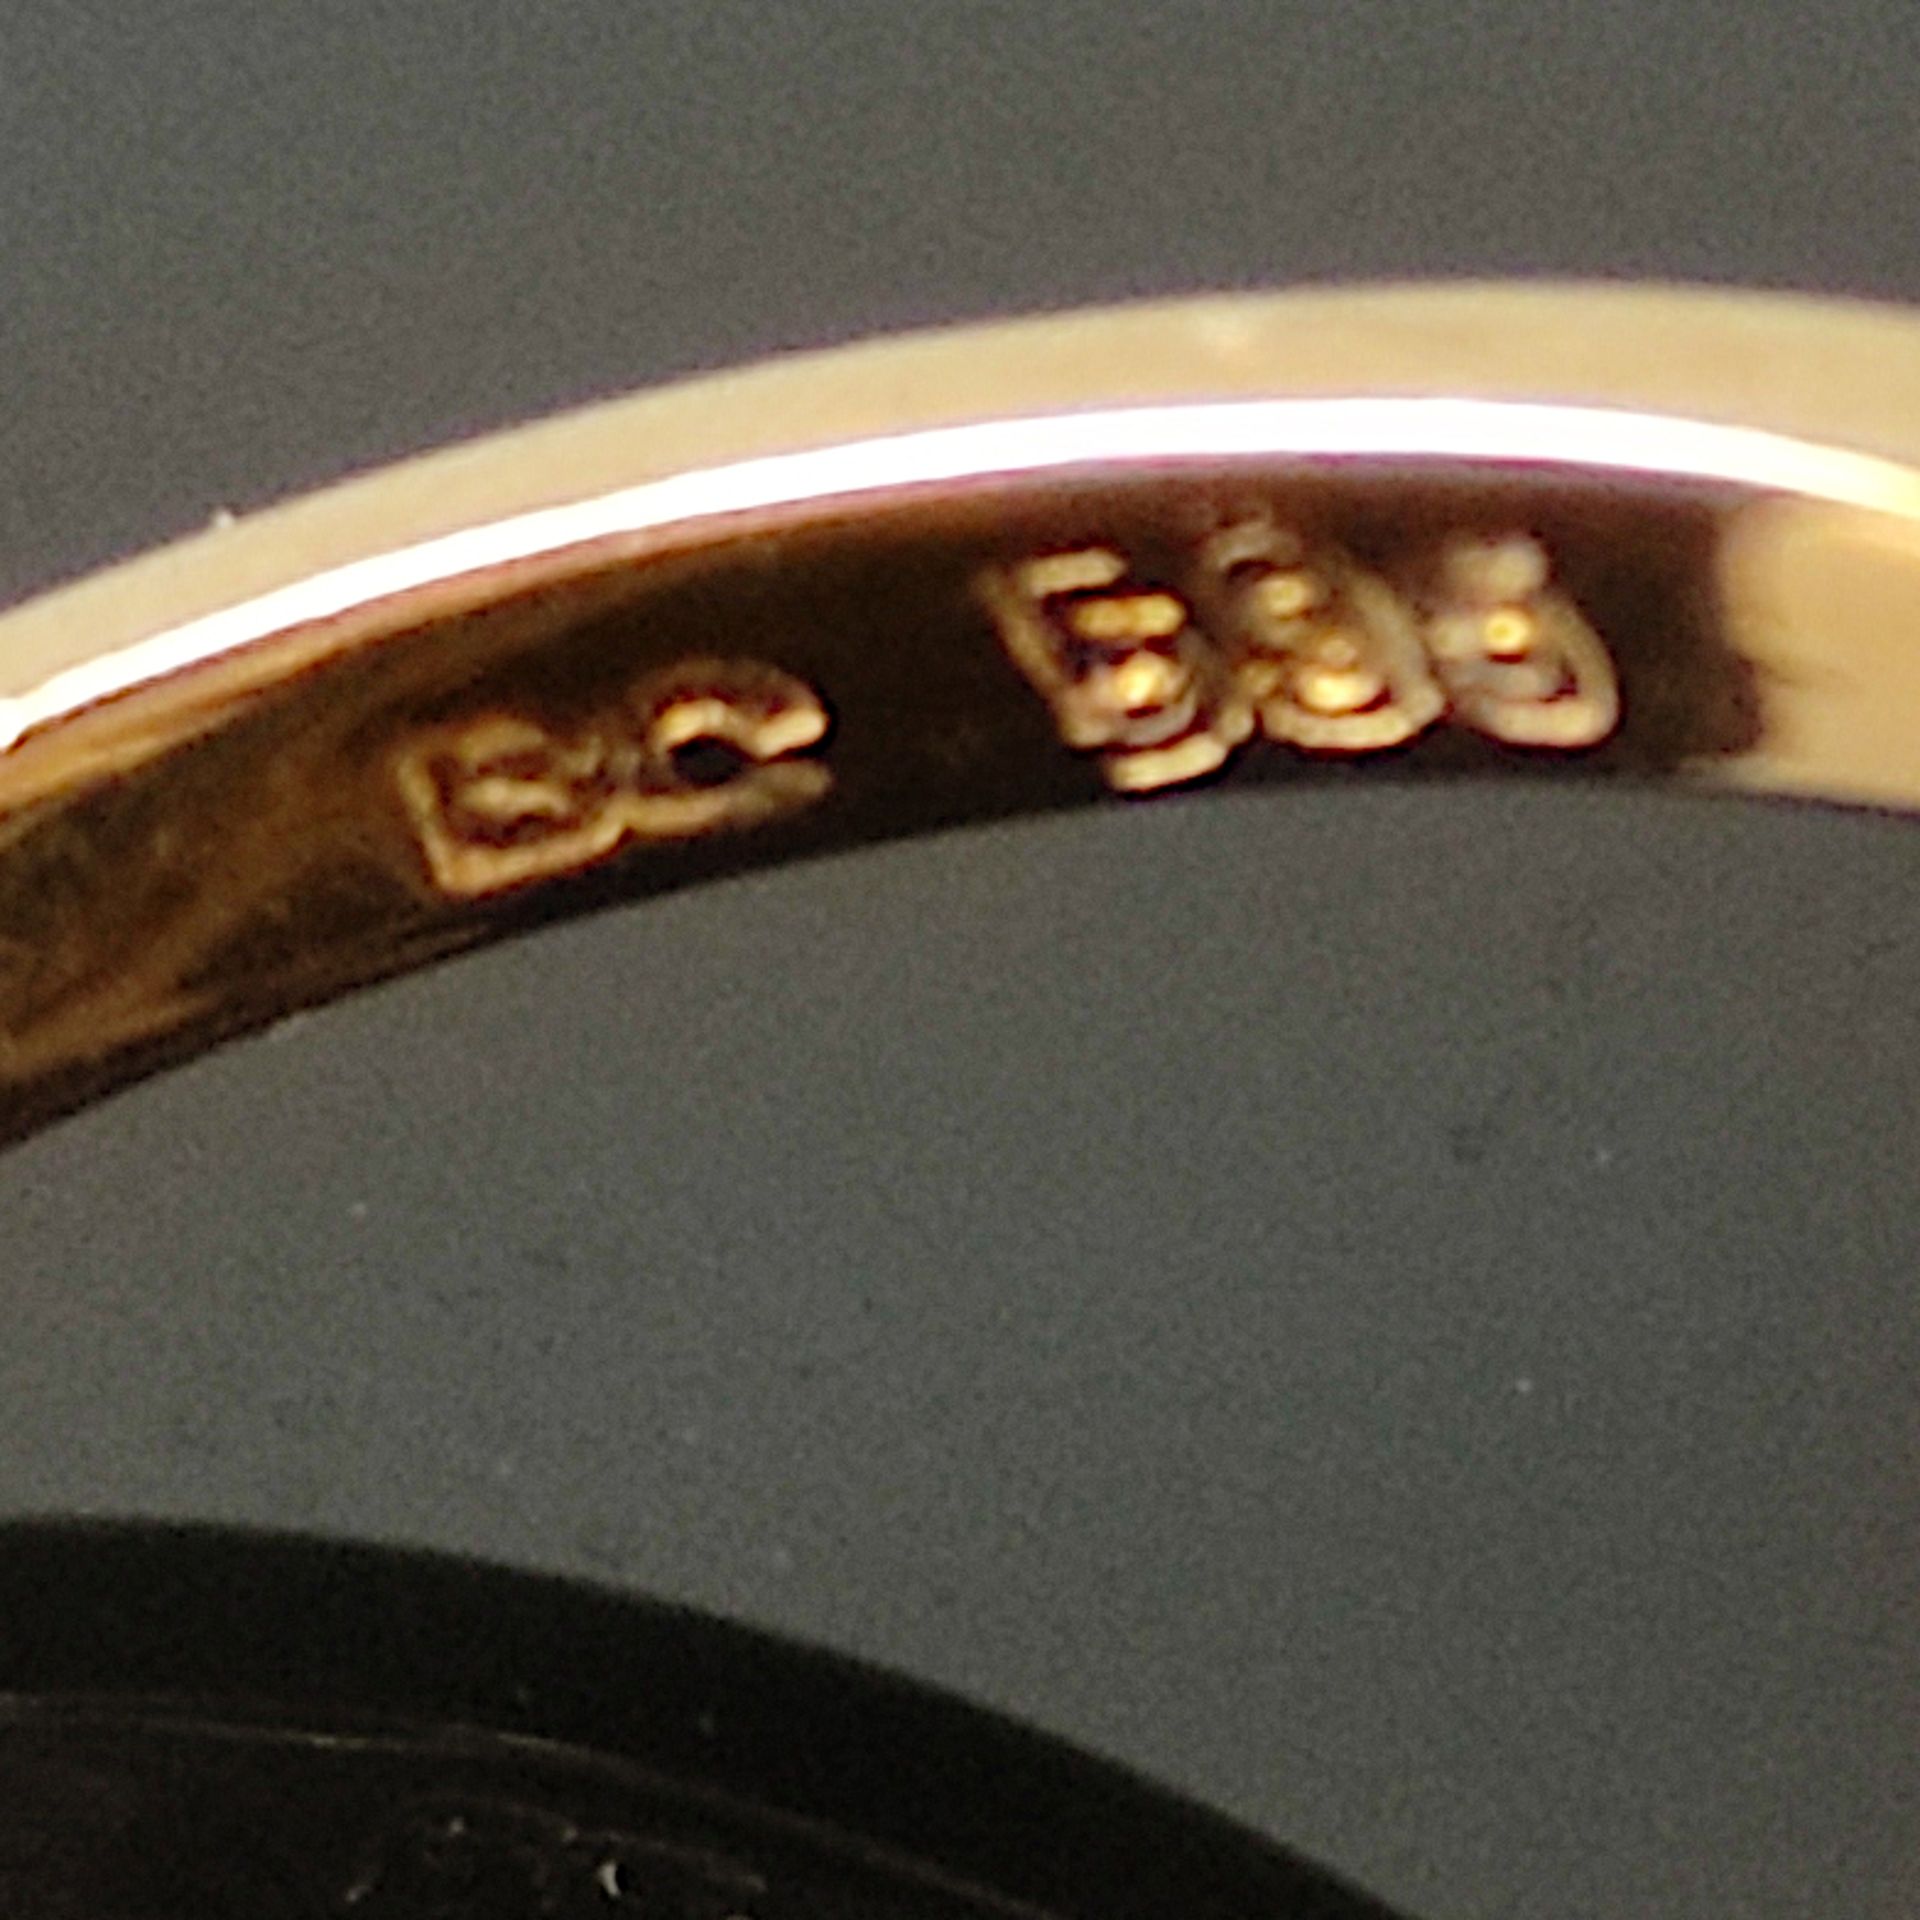 Diamant-Ring, 585/14K Gelb-/Weißgold (punziert), Gesamtgewicht 3,81g, mittig drei Brillanten von zu - Bild 3 aus 3